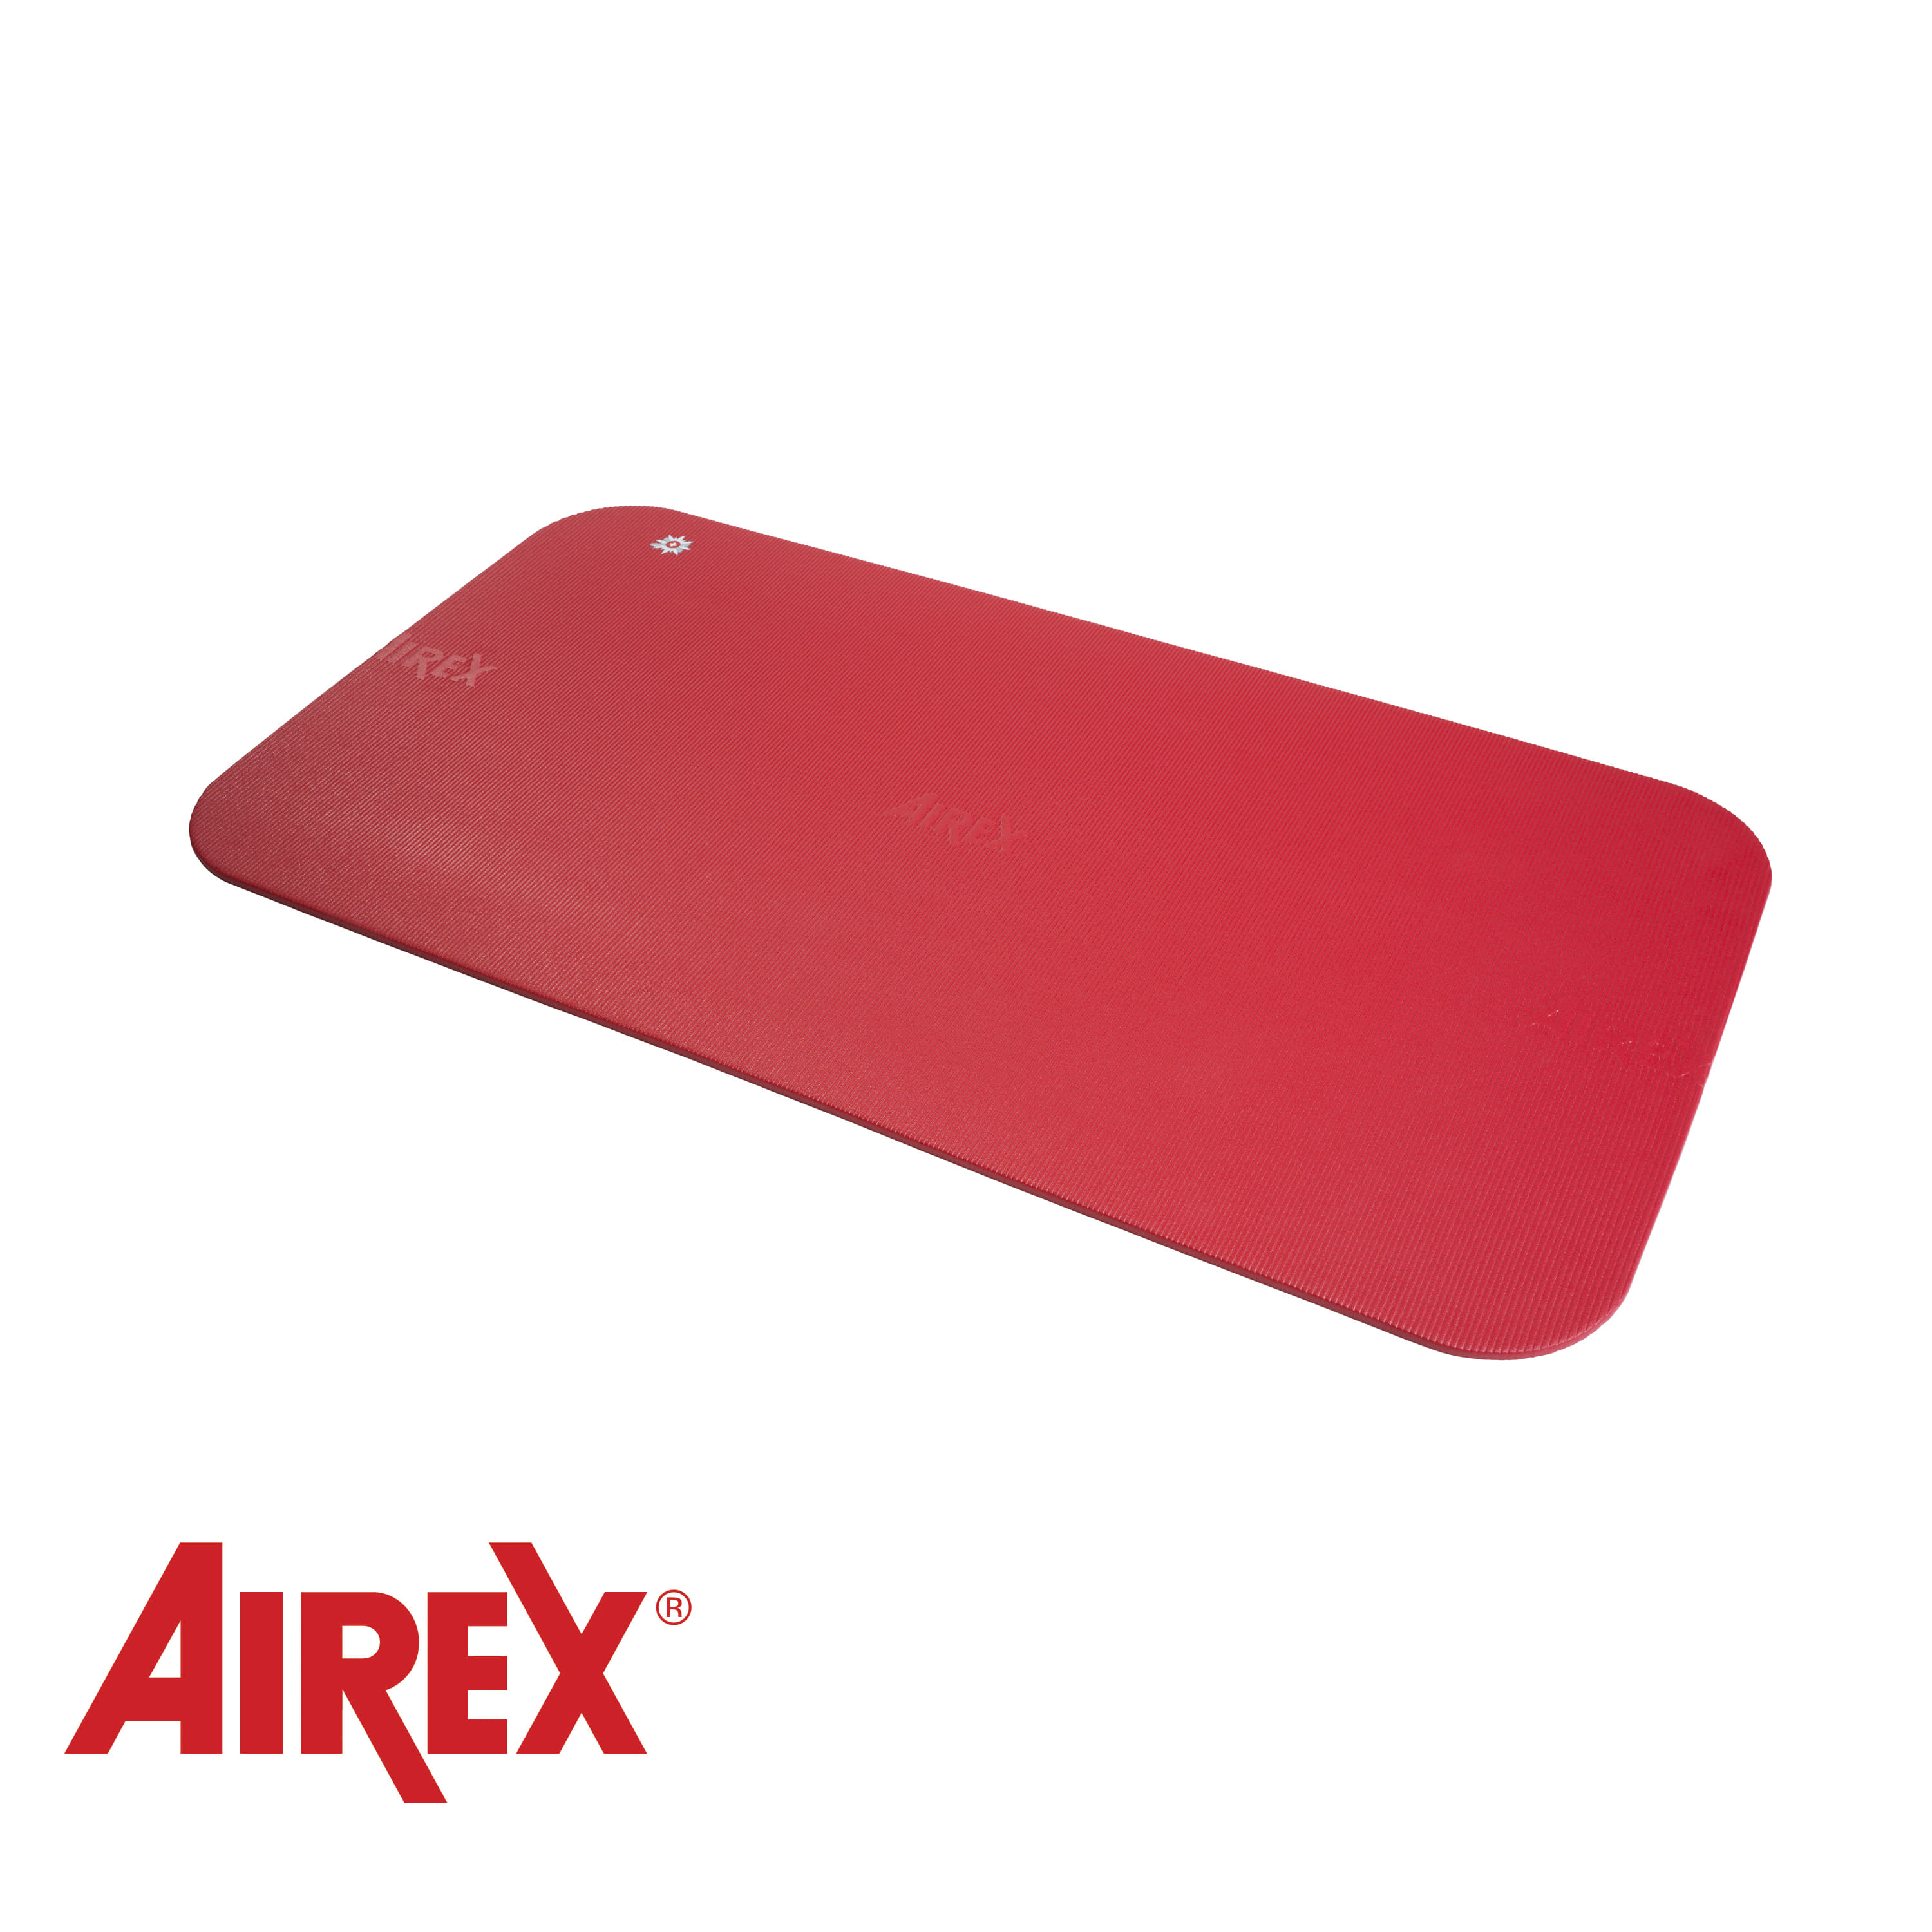 Airex® Corona 185 Mat Red(가로 100cm 와이드)